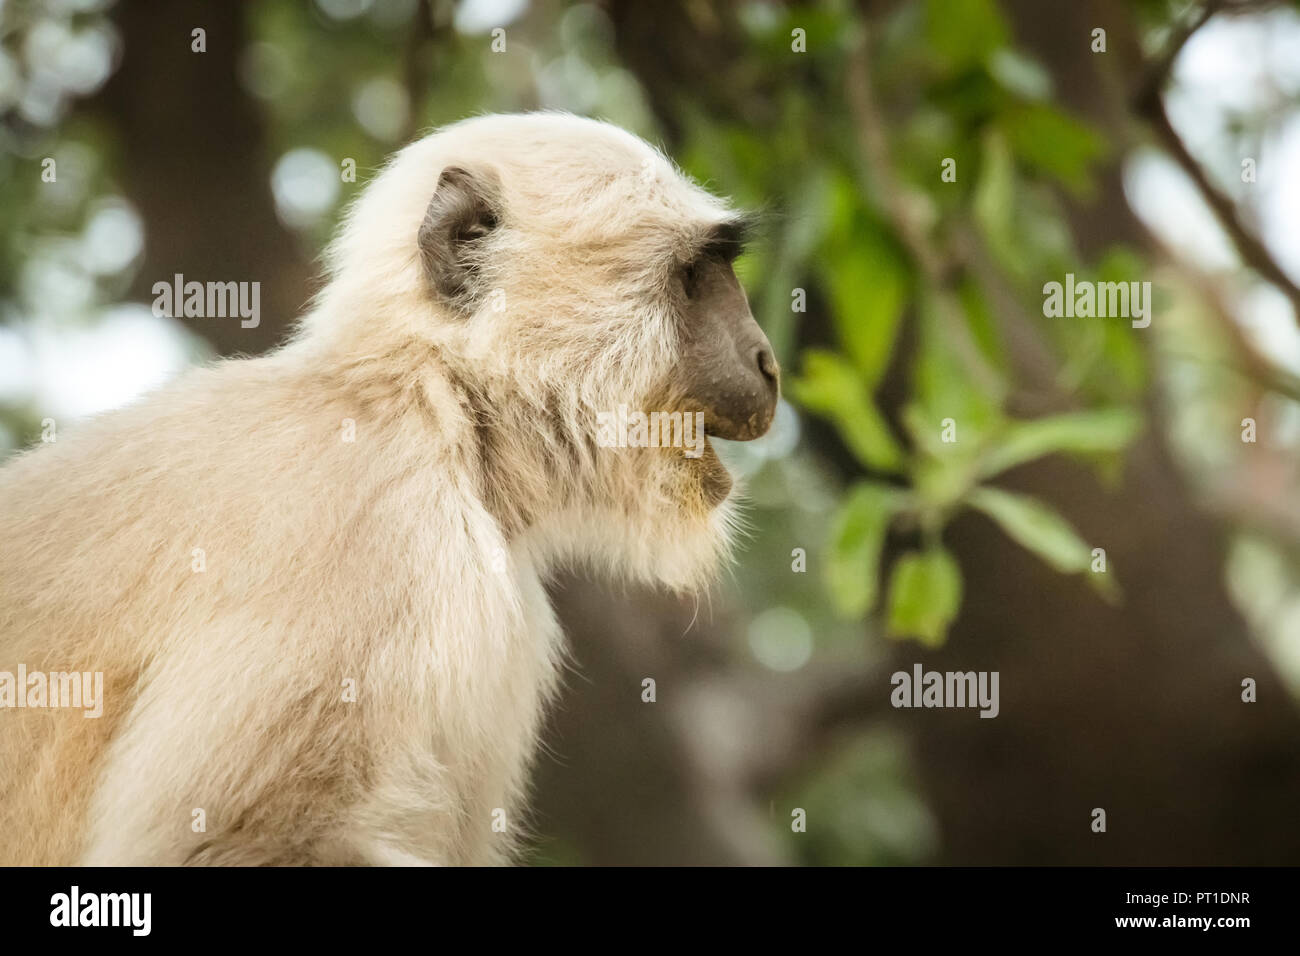 Scimmia con pelliccia bianca su sfondo di verdi alberi. scimmia in un habitat naturale nella giungla. Foto Stock